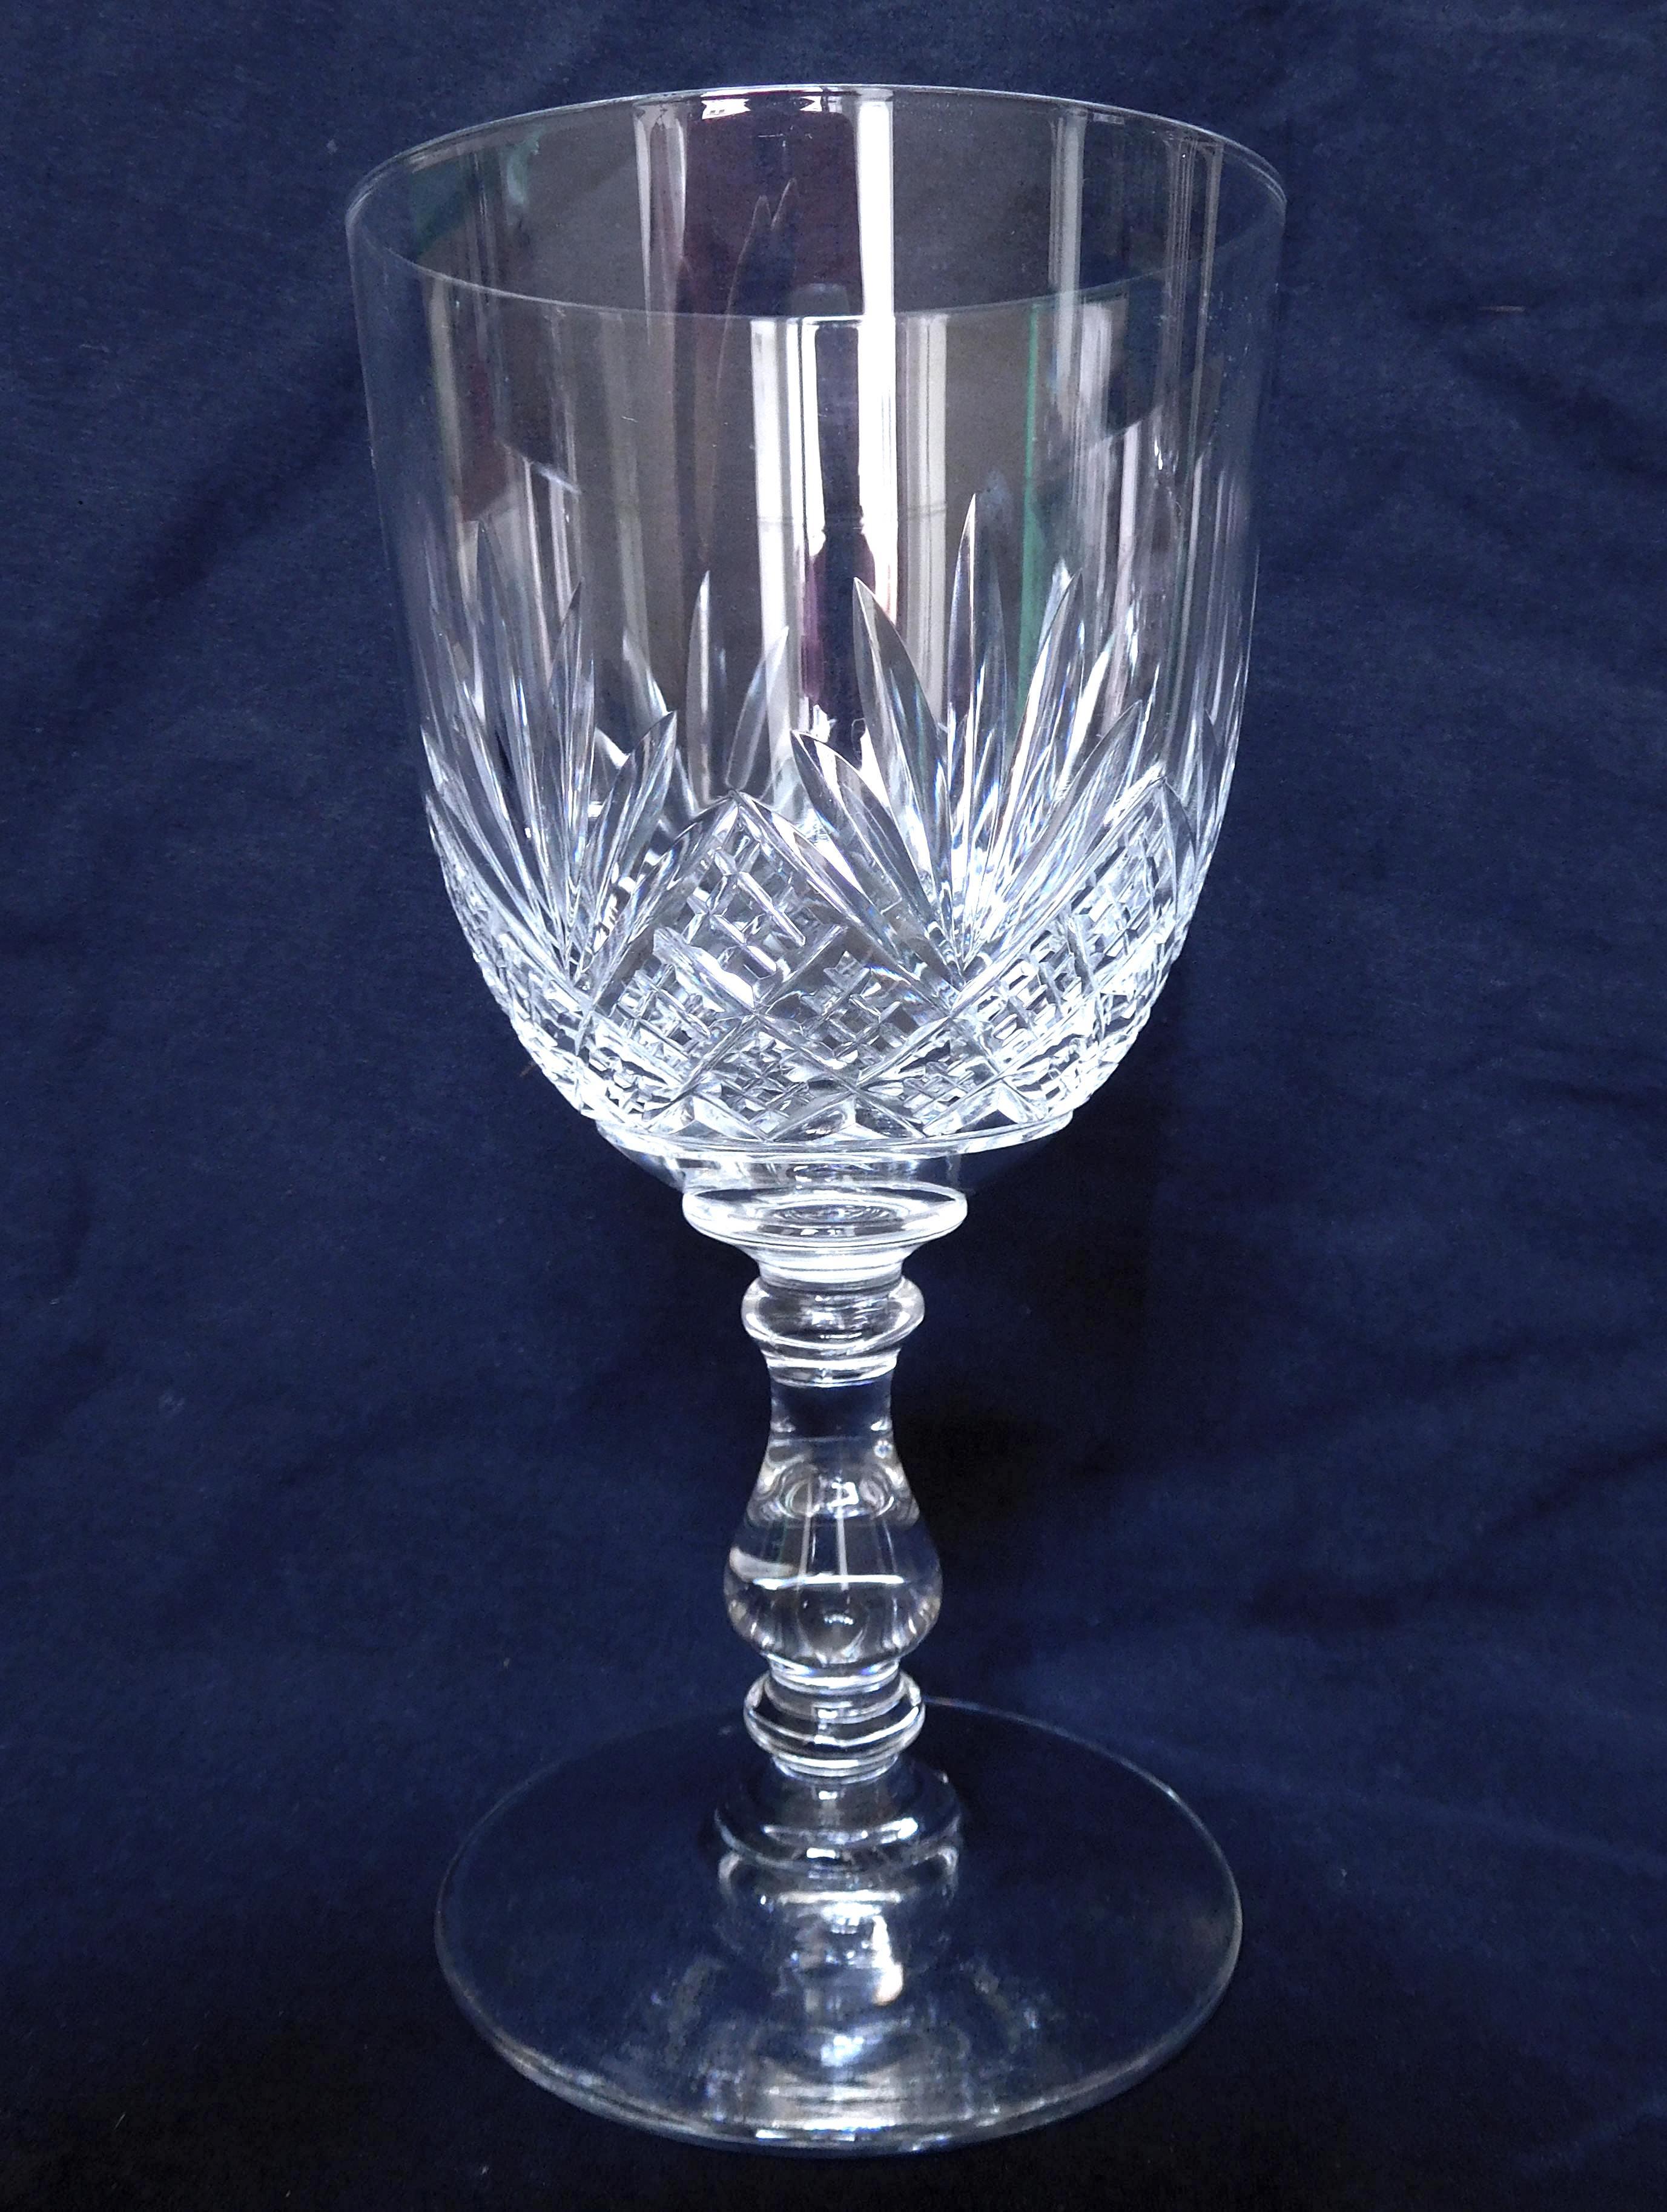 Satz von 3 Baccarat Kristallgläsern, sogenanntes Douai-Modell, bestehend aus :
- 1 Wasserglas (15,5 cm hoch)
- 1 Weinglas (12,3 cm hoch)
- 1 Portweinglas (10,3 cm hoch) oder Weißweinglas (im späten 19. und frühen 20. Jahrhundert wurde dieses Format